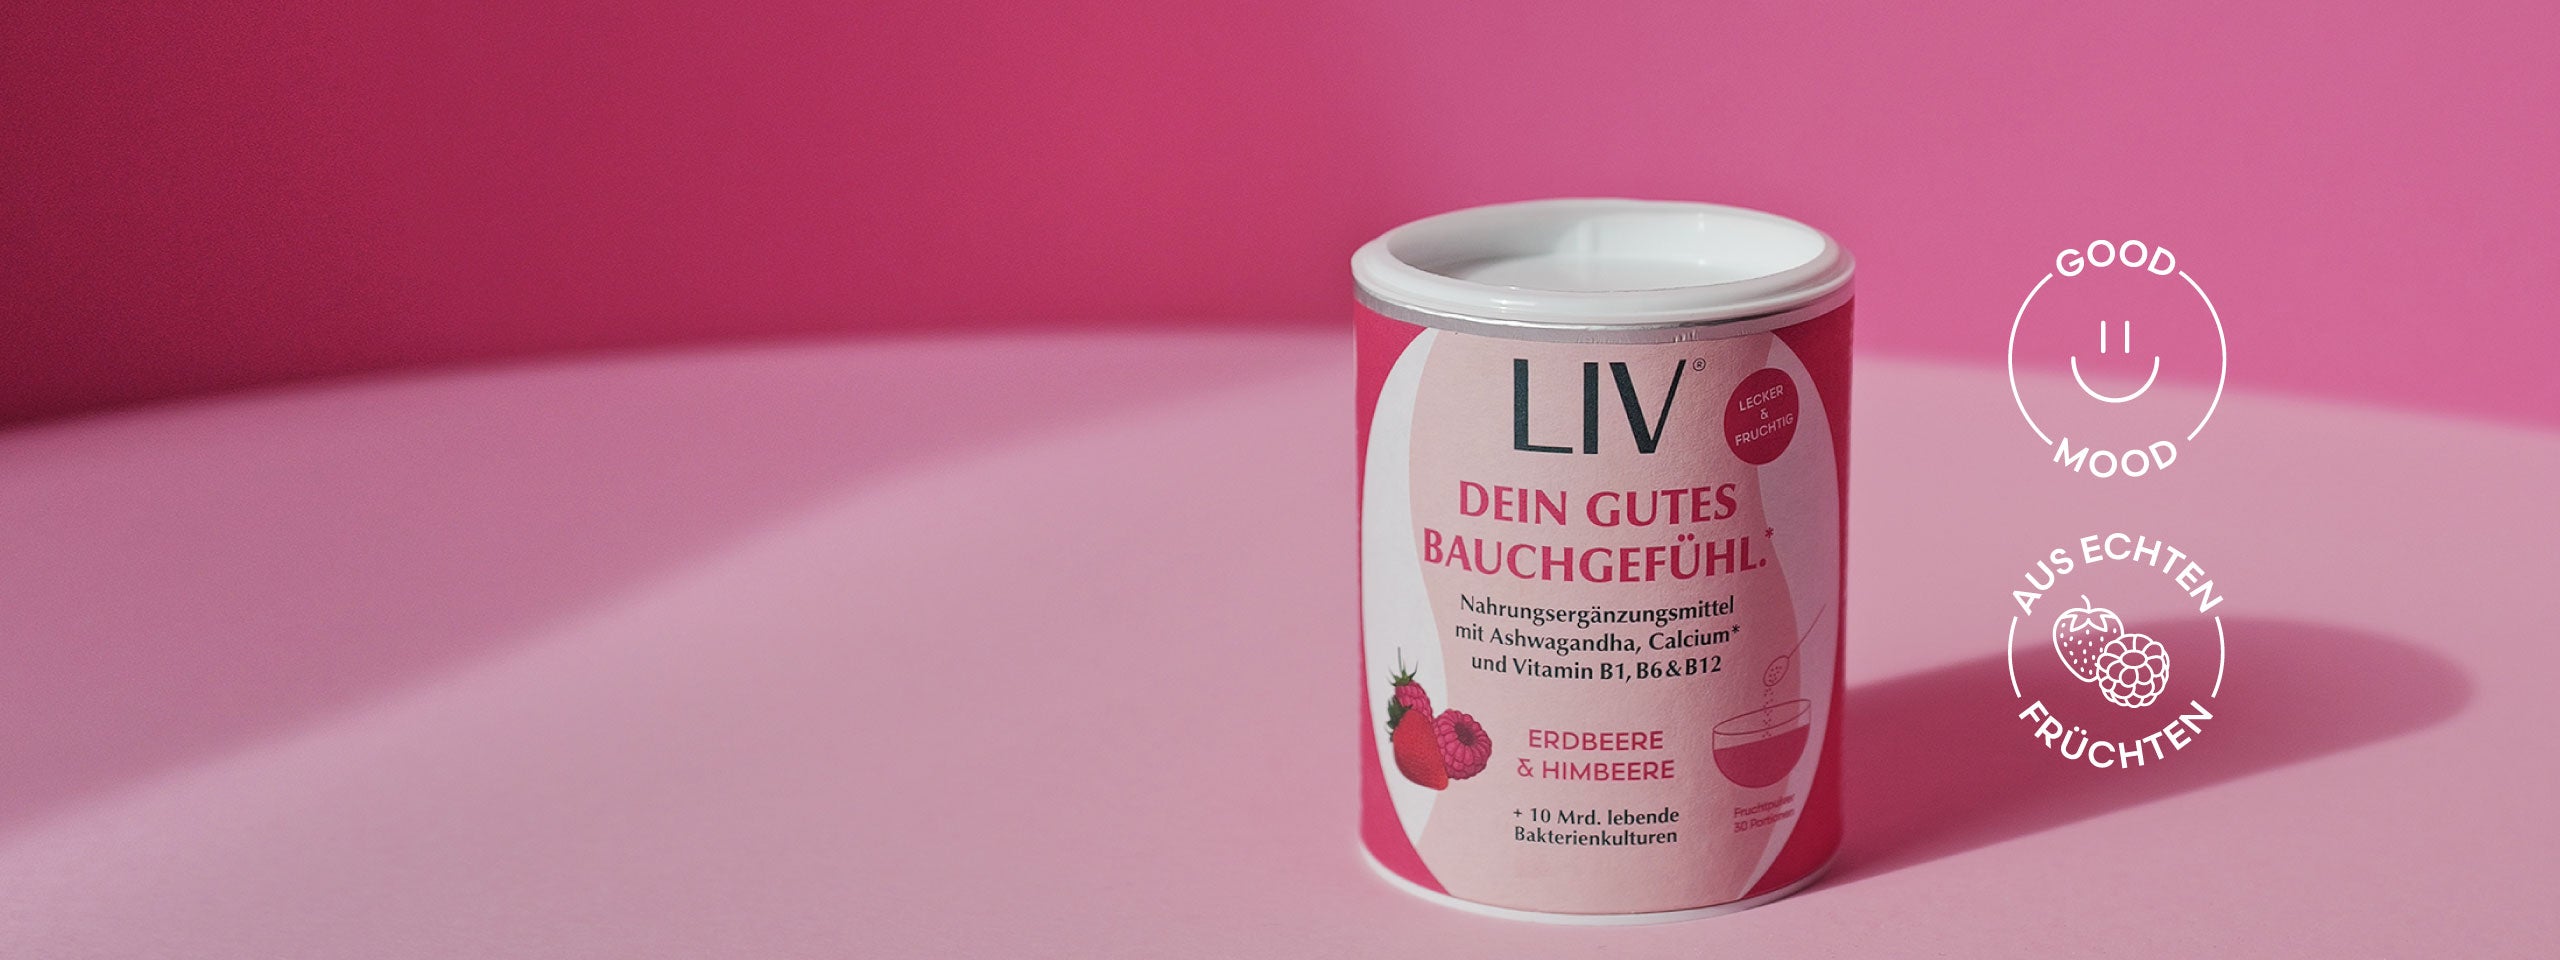 Verpackung der Darmkur vor einem rosa Hintergrund, neben einer visuellen Darstellung von einem Smiley mit der Aufschrift "Good Mood" und eine visuelle Darstellung von Erdbeere und Himbeere mit der Aufschrift "Aus echten Früchten".